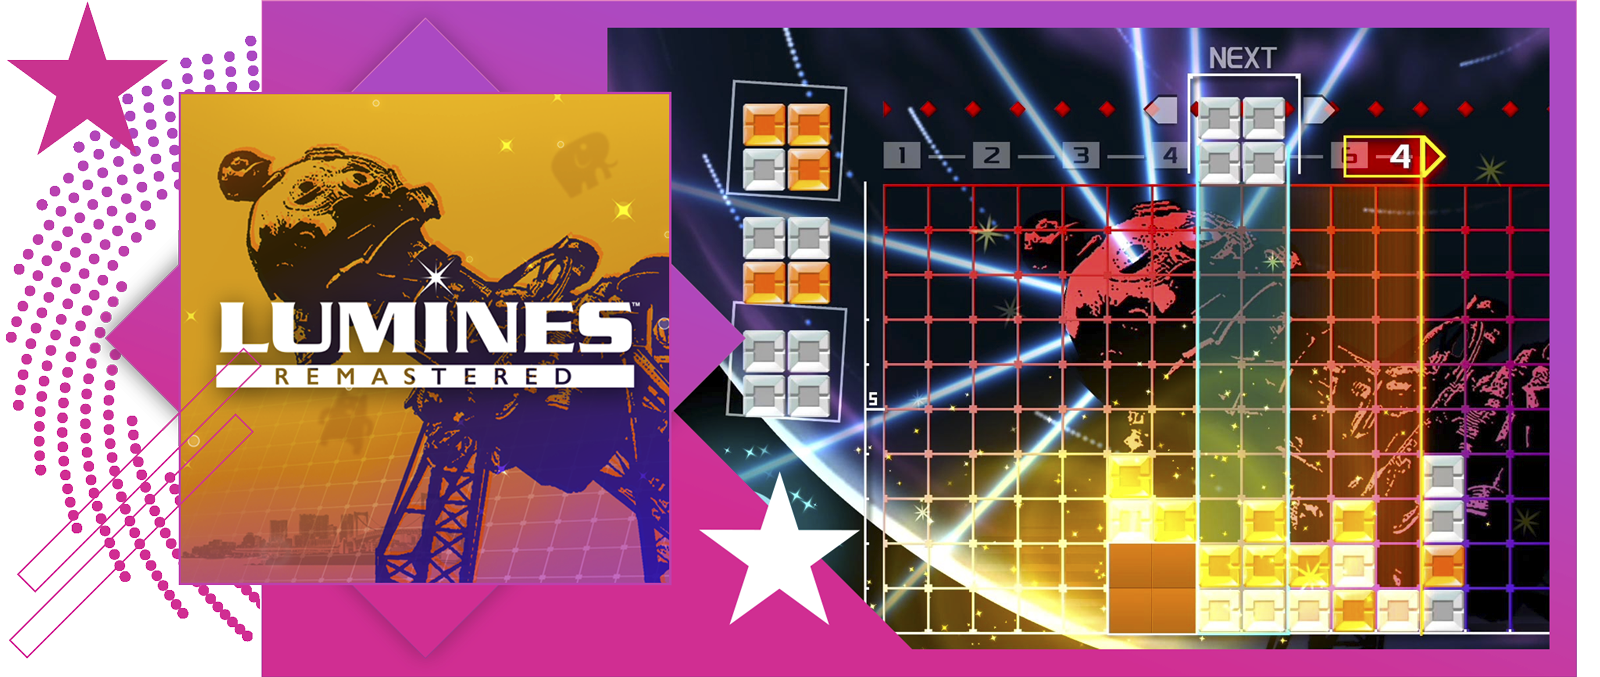 Bild der besten Rhythmusspiele mit den wichtigsten Grafiken und Gameplay-Elementen von Lumines: Remastered.